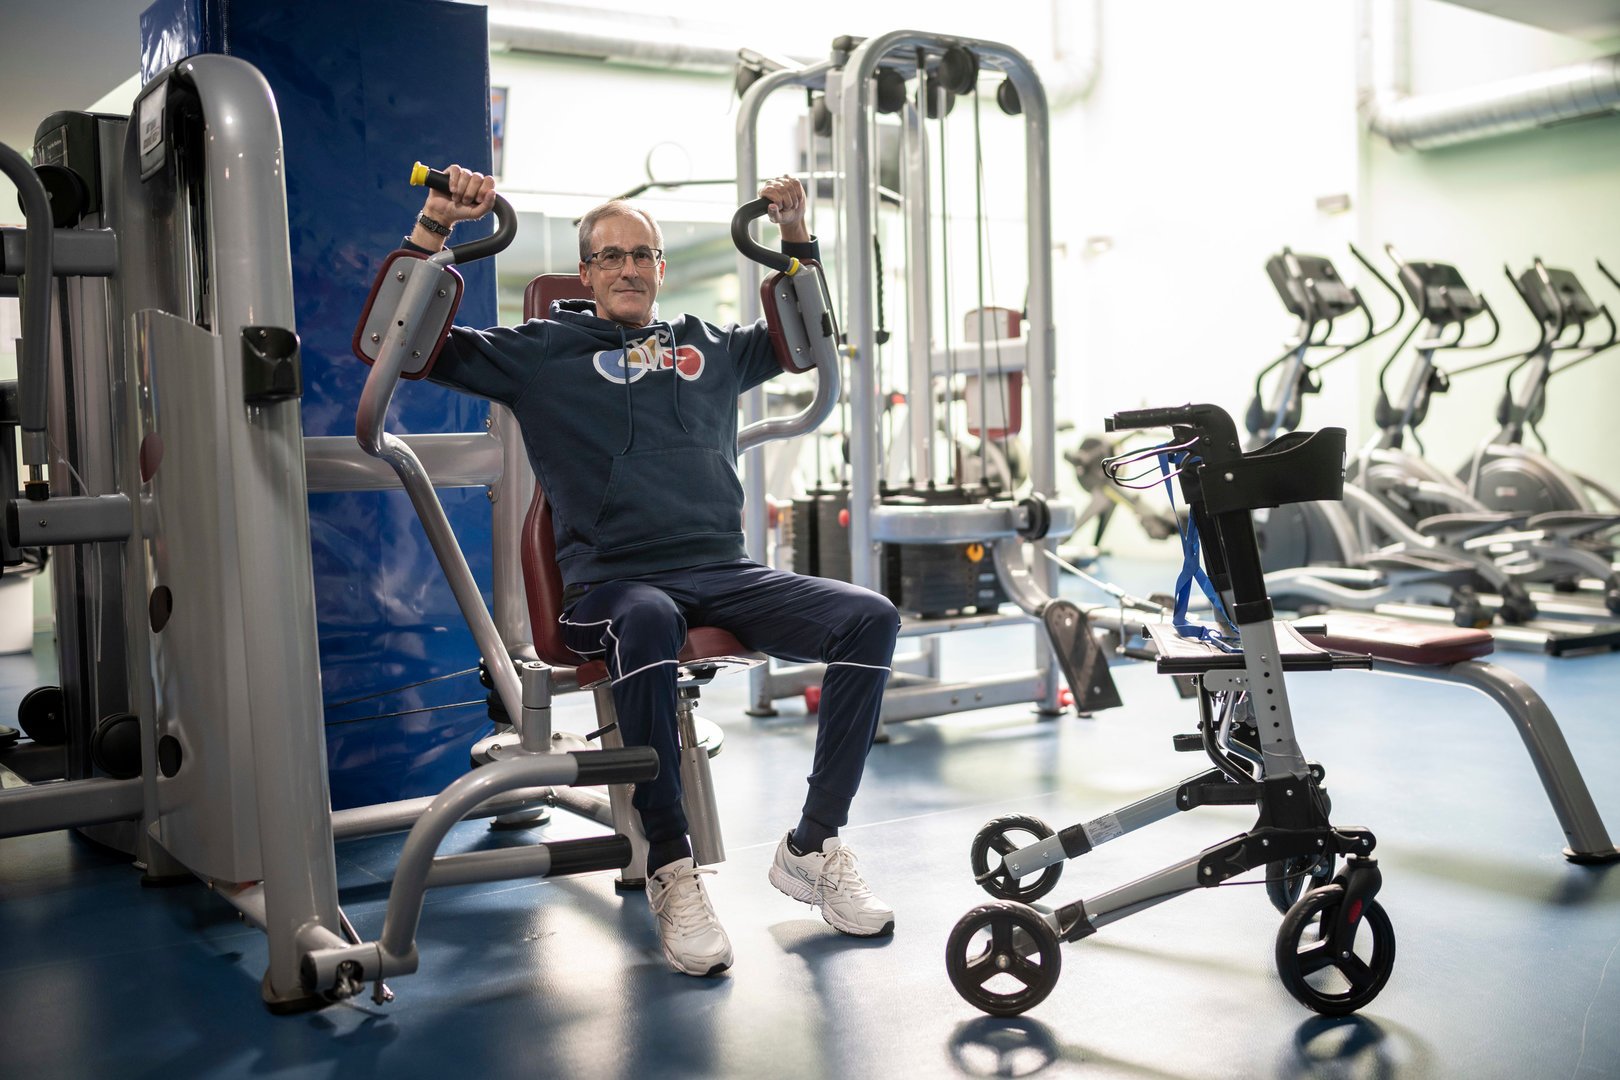 Fernando González, ayer en el gimnasio realizando un ejercicio.
FOTO: ÓSCAR PINAL